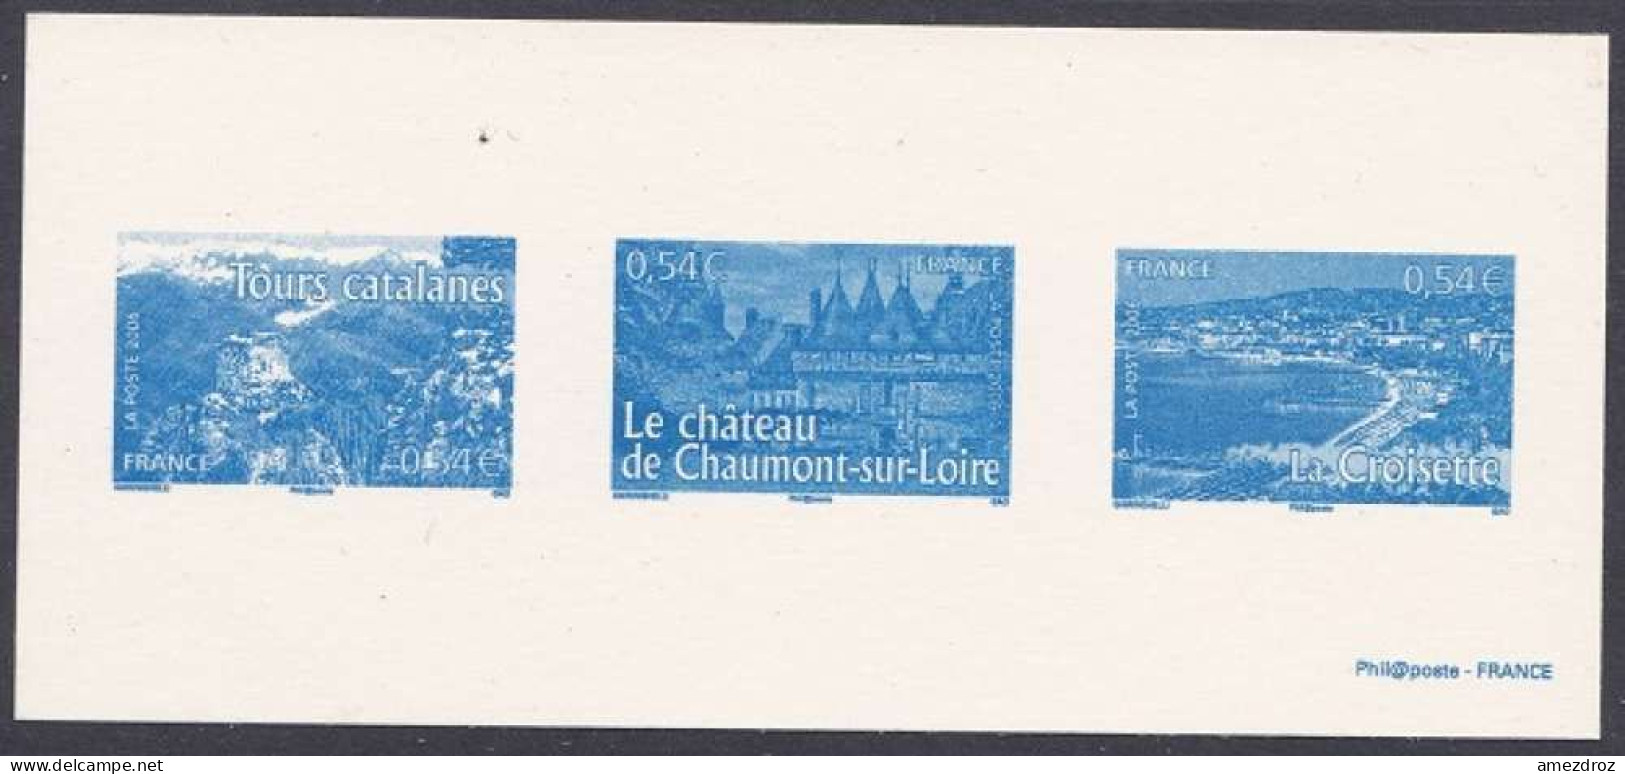 France Gravure Officielle - Tour Catalane - Château De Chaumont - Croisette (4) - Documents Of Postal Services